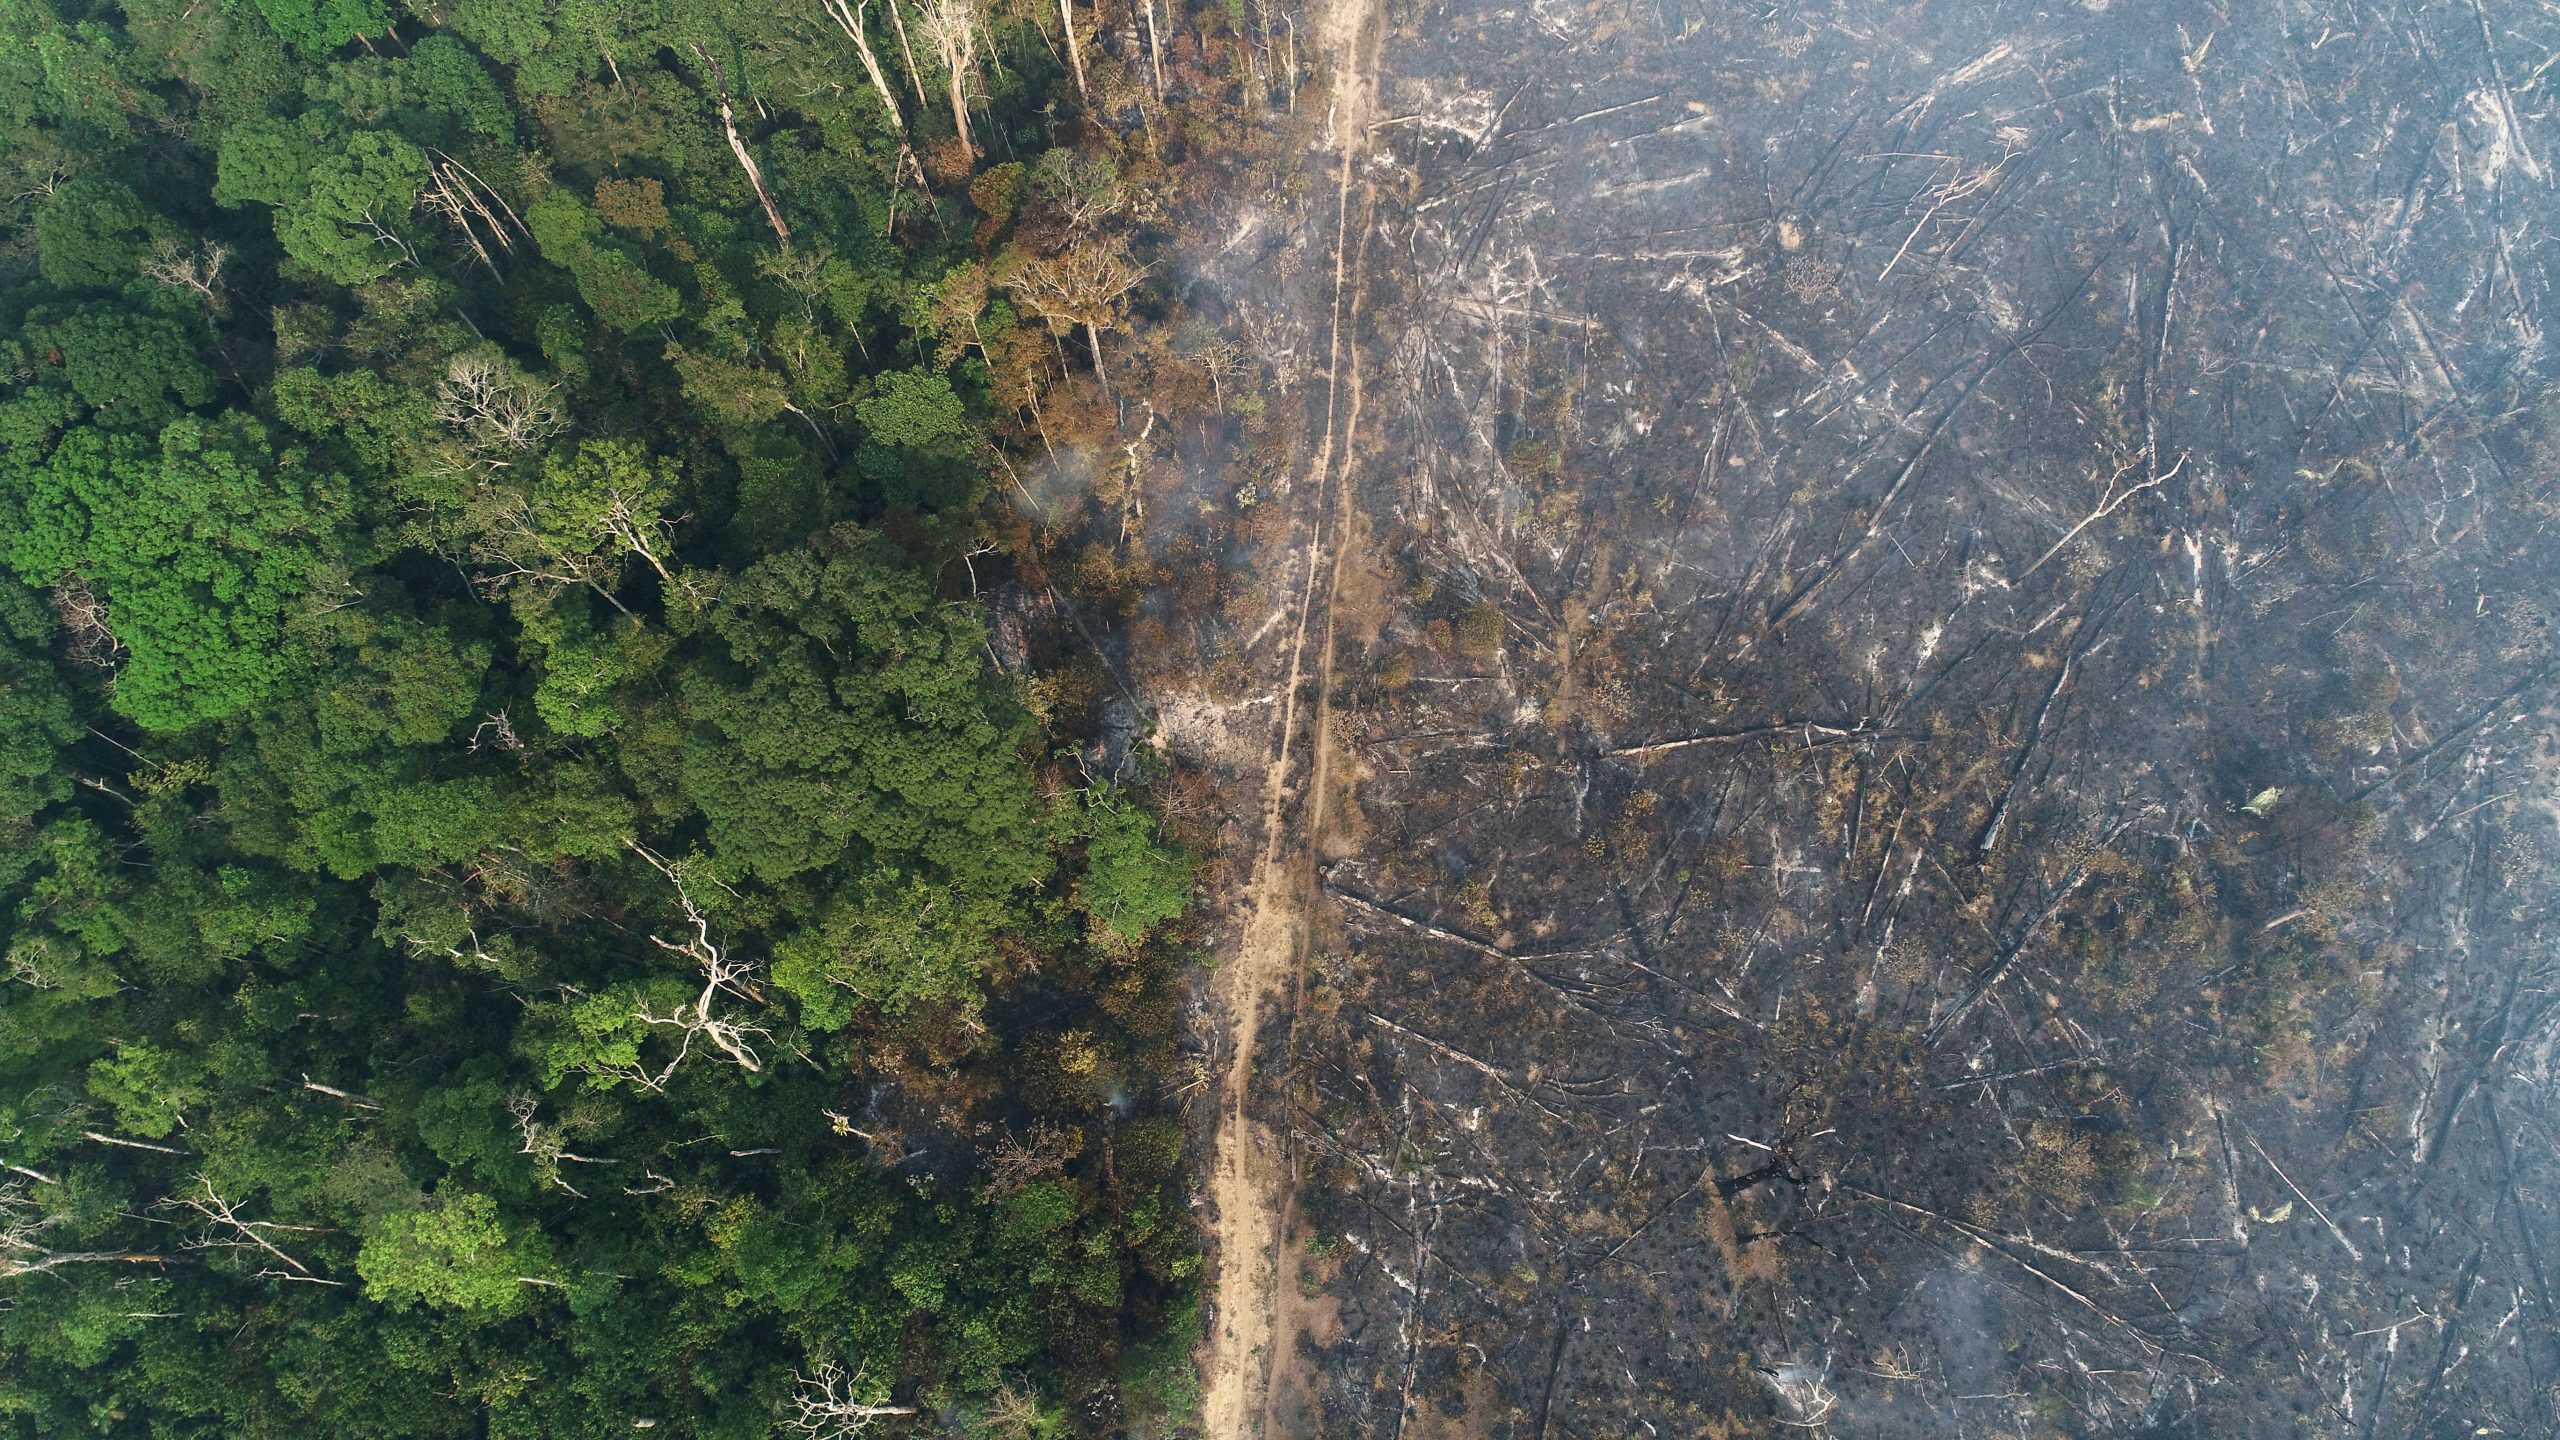 'Exaustão de recursos' levou ao recolhimento das brigadas contra incêndios florestais, diz Ibama